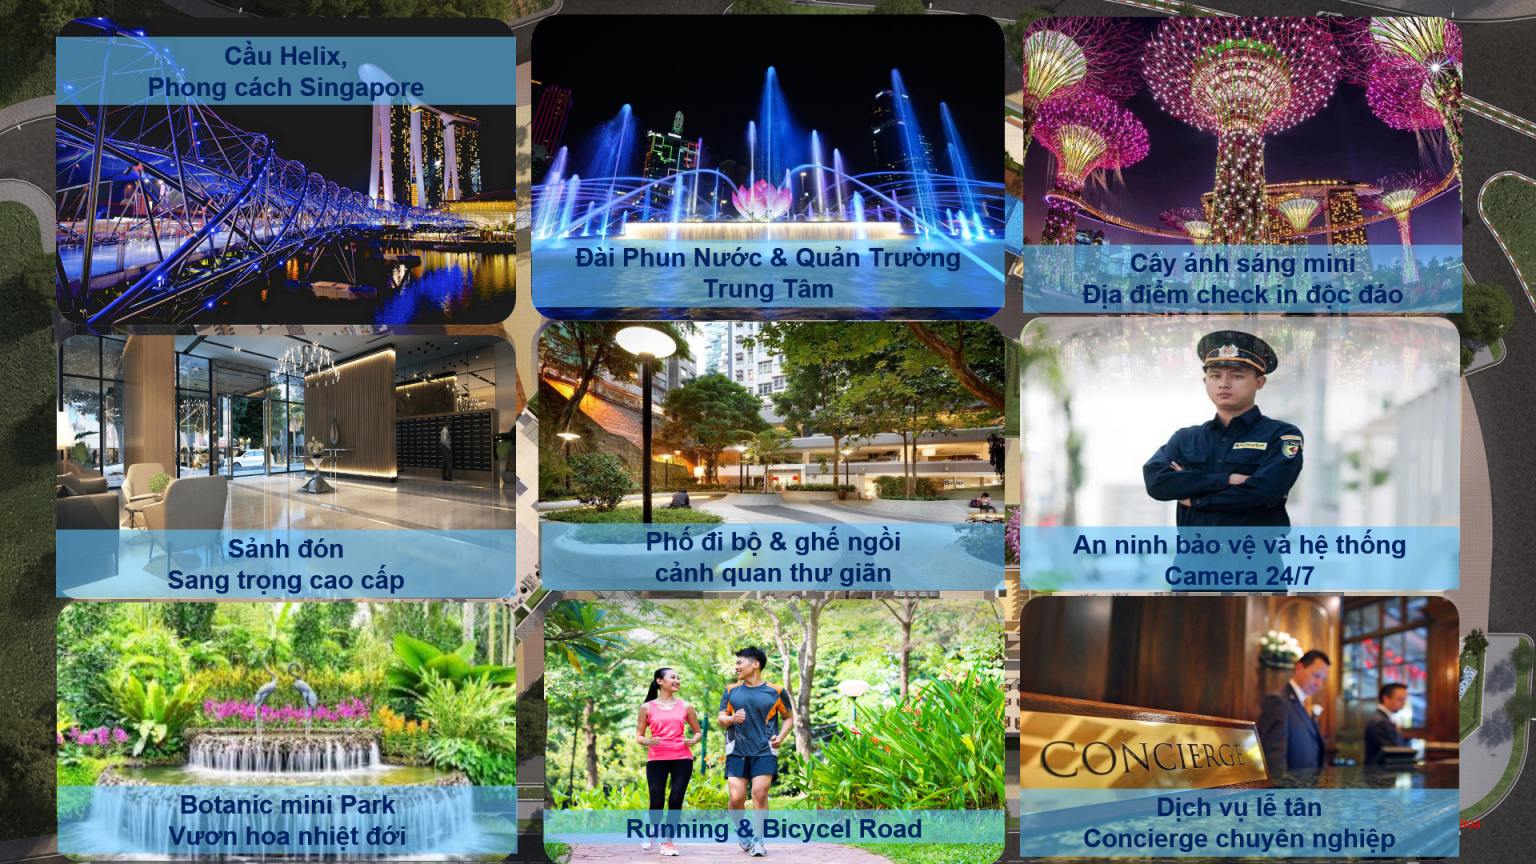 Cầu Helix phong cách Singapore; Đài Phun nước và Quảng trường trung tâm; Cây ánh sáng mini;  Sảnh đón sang trọng cao cấp An ninh bảo vệ và hệ thống Camera 24/7; Dịch vụ lễ tân chuyên nghiệp